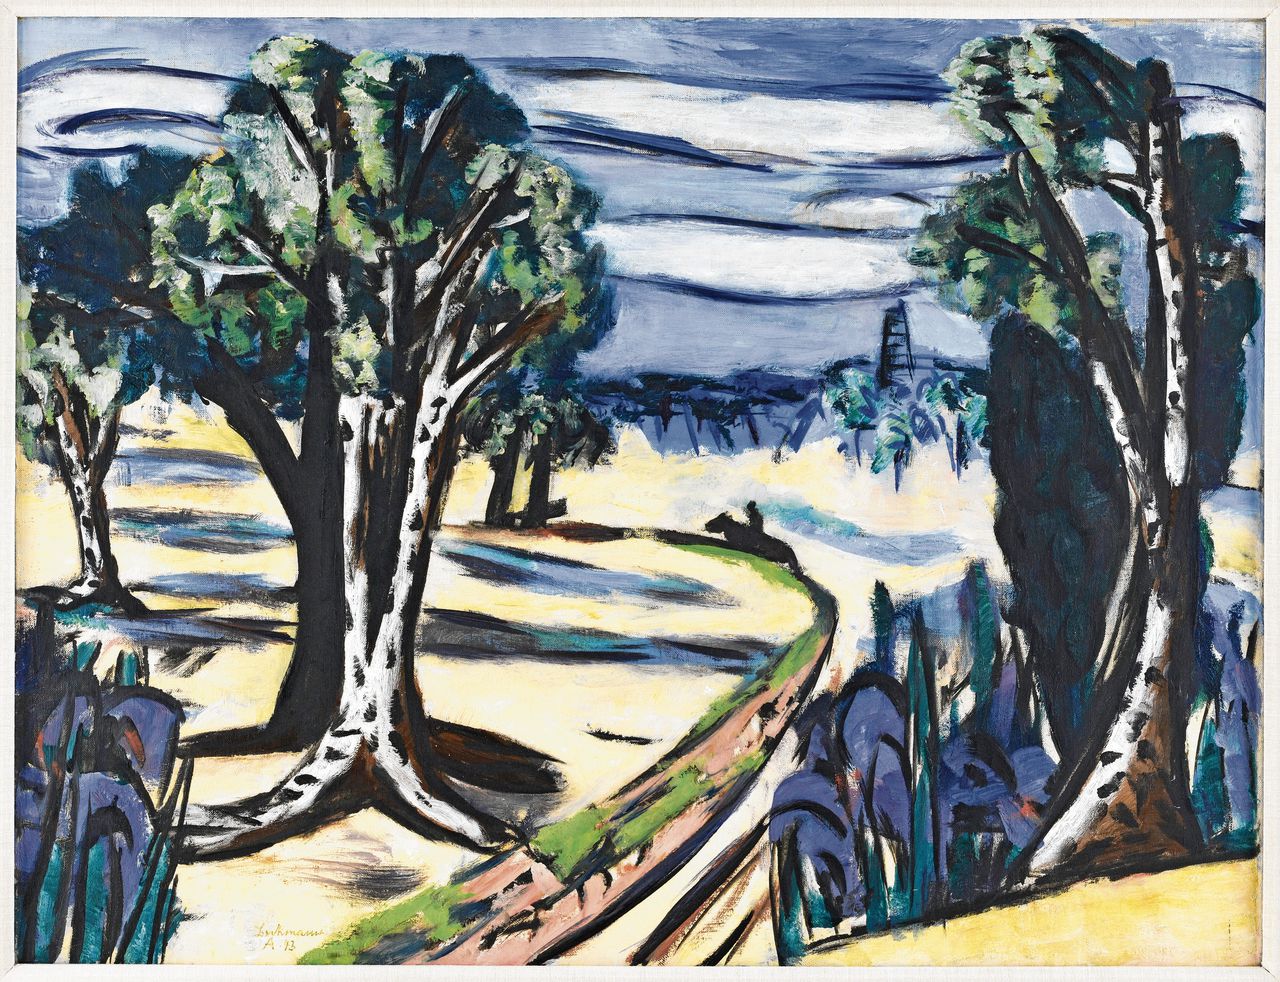 Max Beckmann, Laren (Landschaft mit Reiter) (1943, olieverf op doek, 66 × 86 cm)